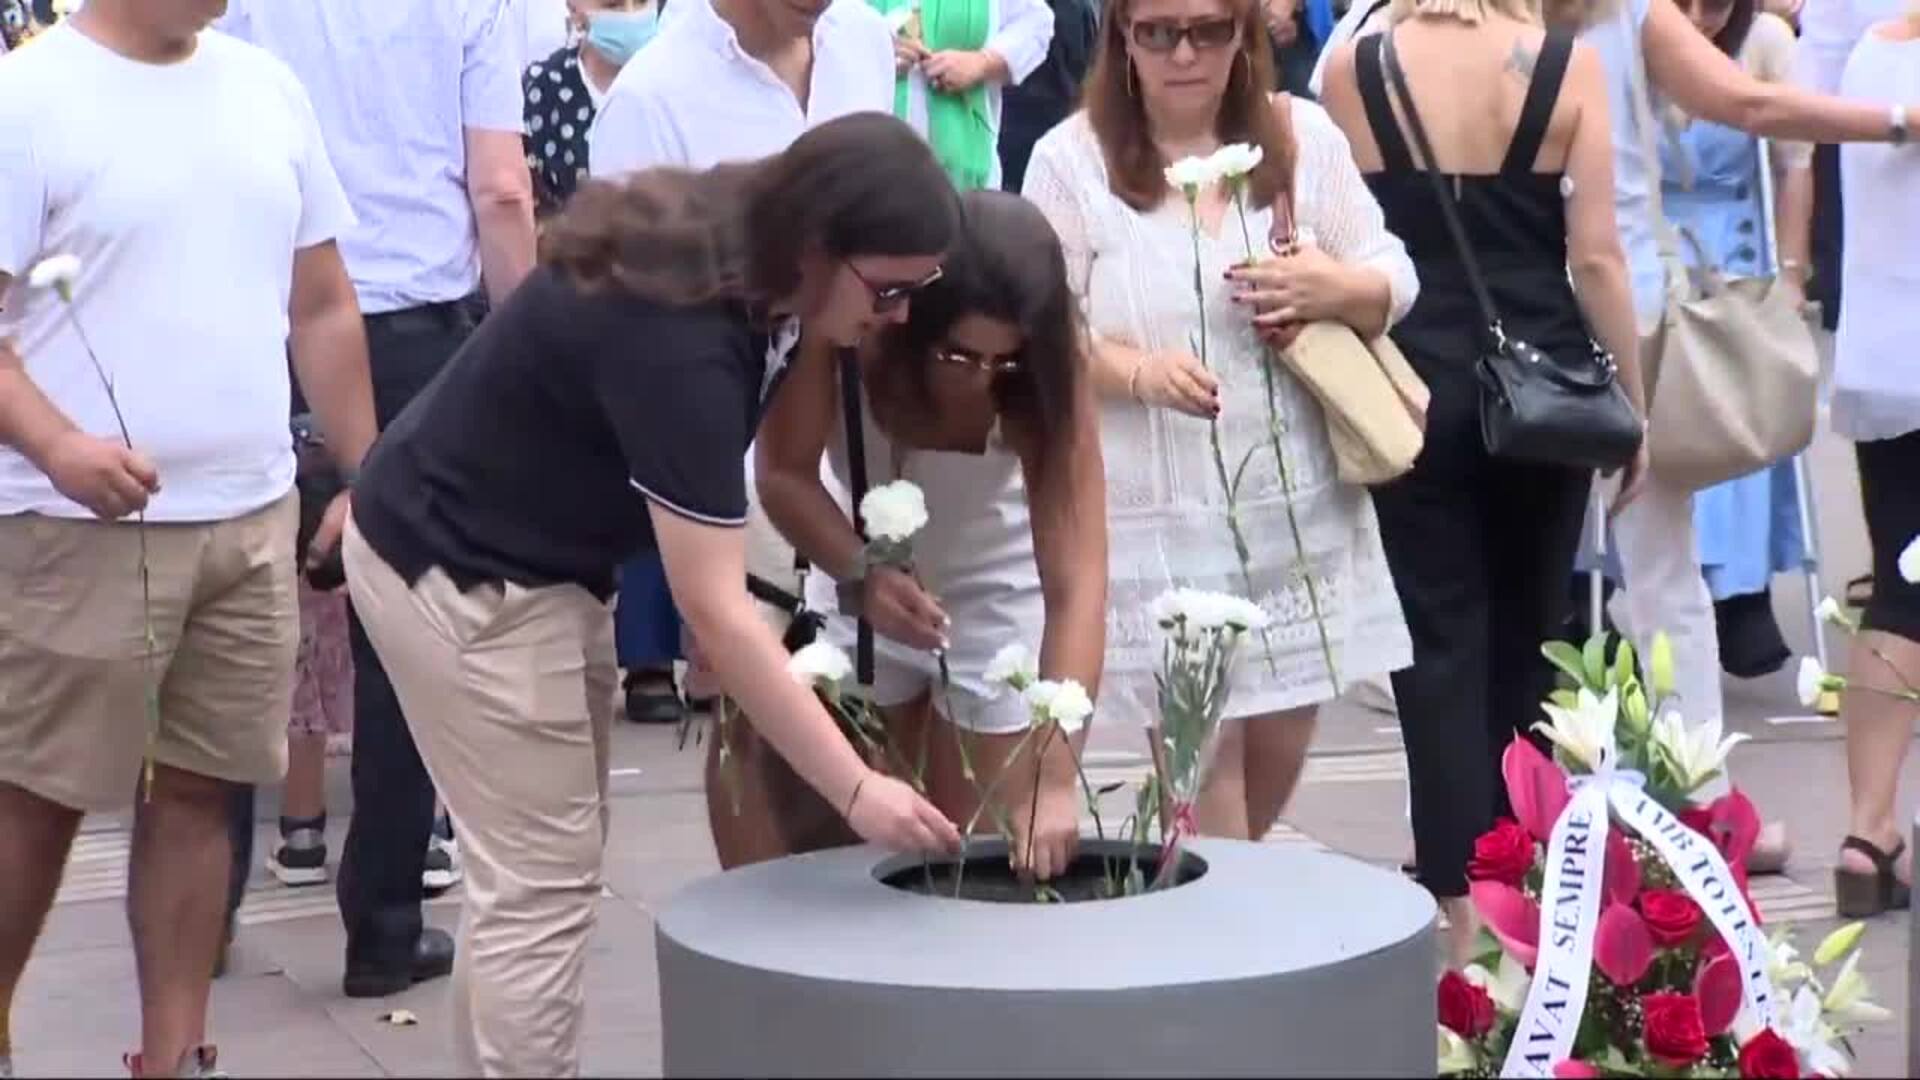 Barcelona recuerda a las víctimas del 17-A en un acto empañado por tensión independentista